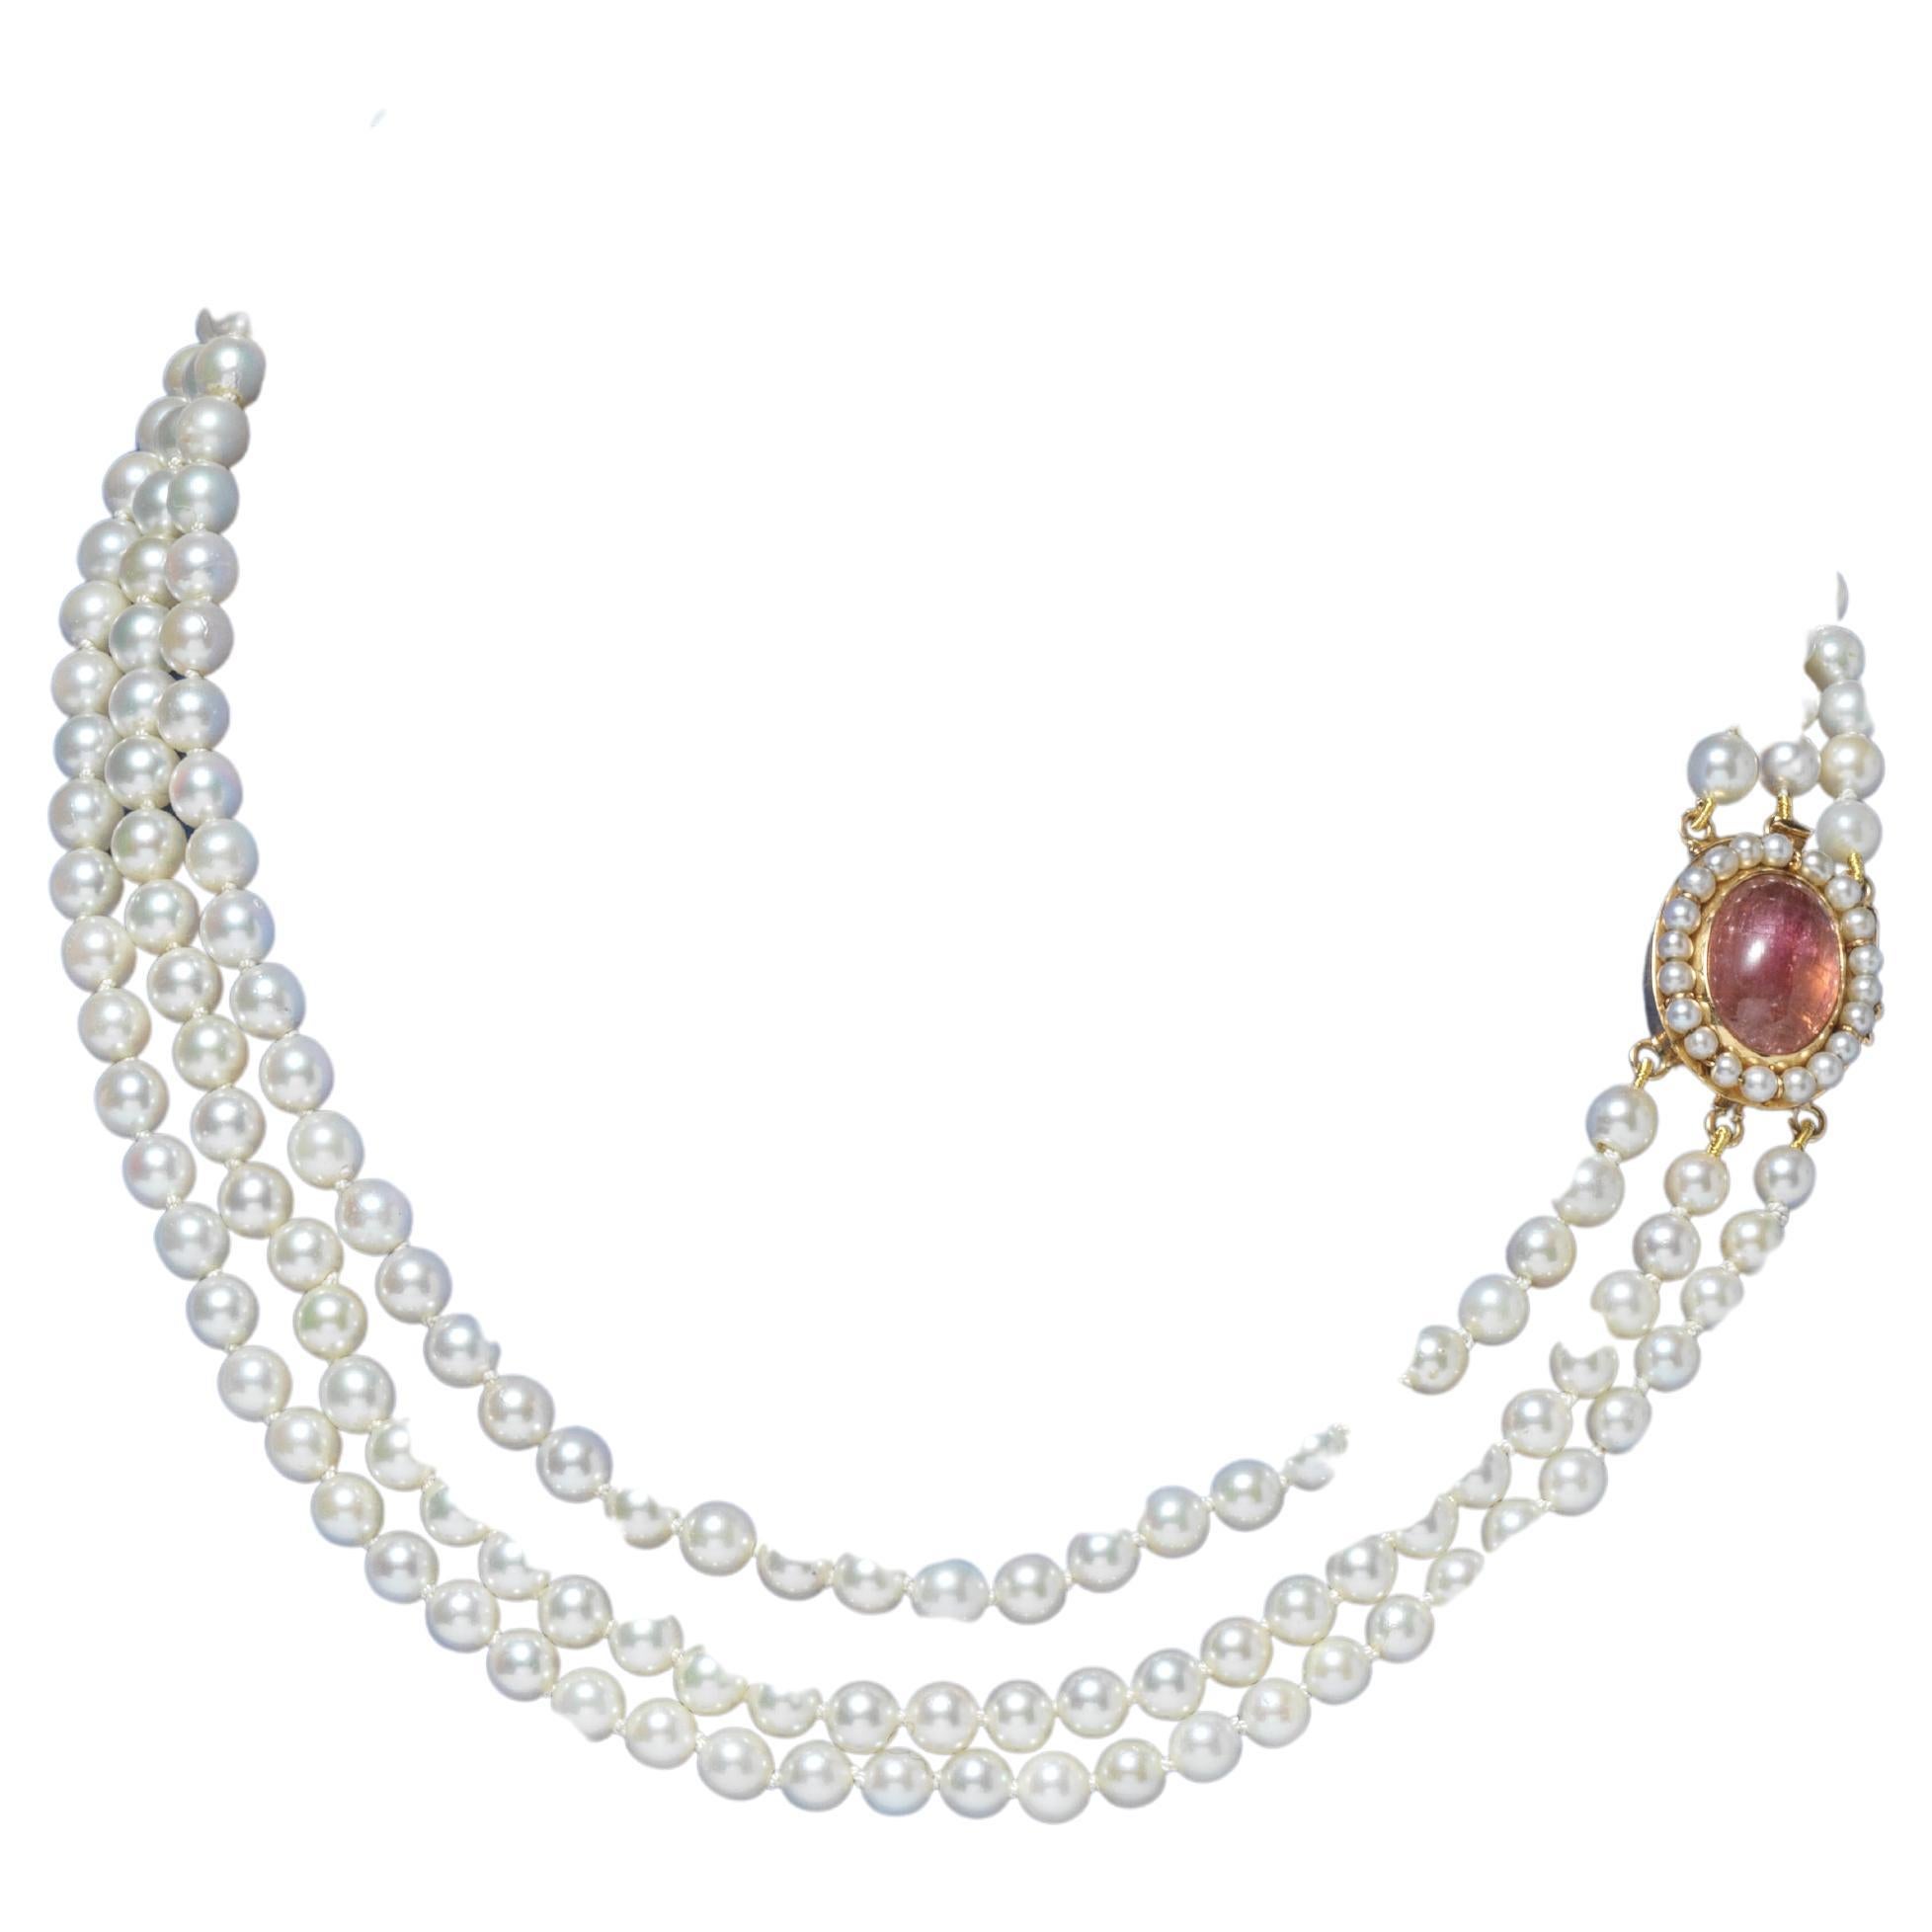 Un charmant collier de perles avec trois rangs de perles qui se ferment ensemble avec un cadenas en or 18 k qui a une turmaline taillée en cabochon au milieu. La serrure a été fabriquée par l'orfèvre suédois K.H. Augustsson en 1963.

Le design de la